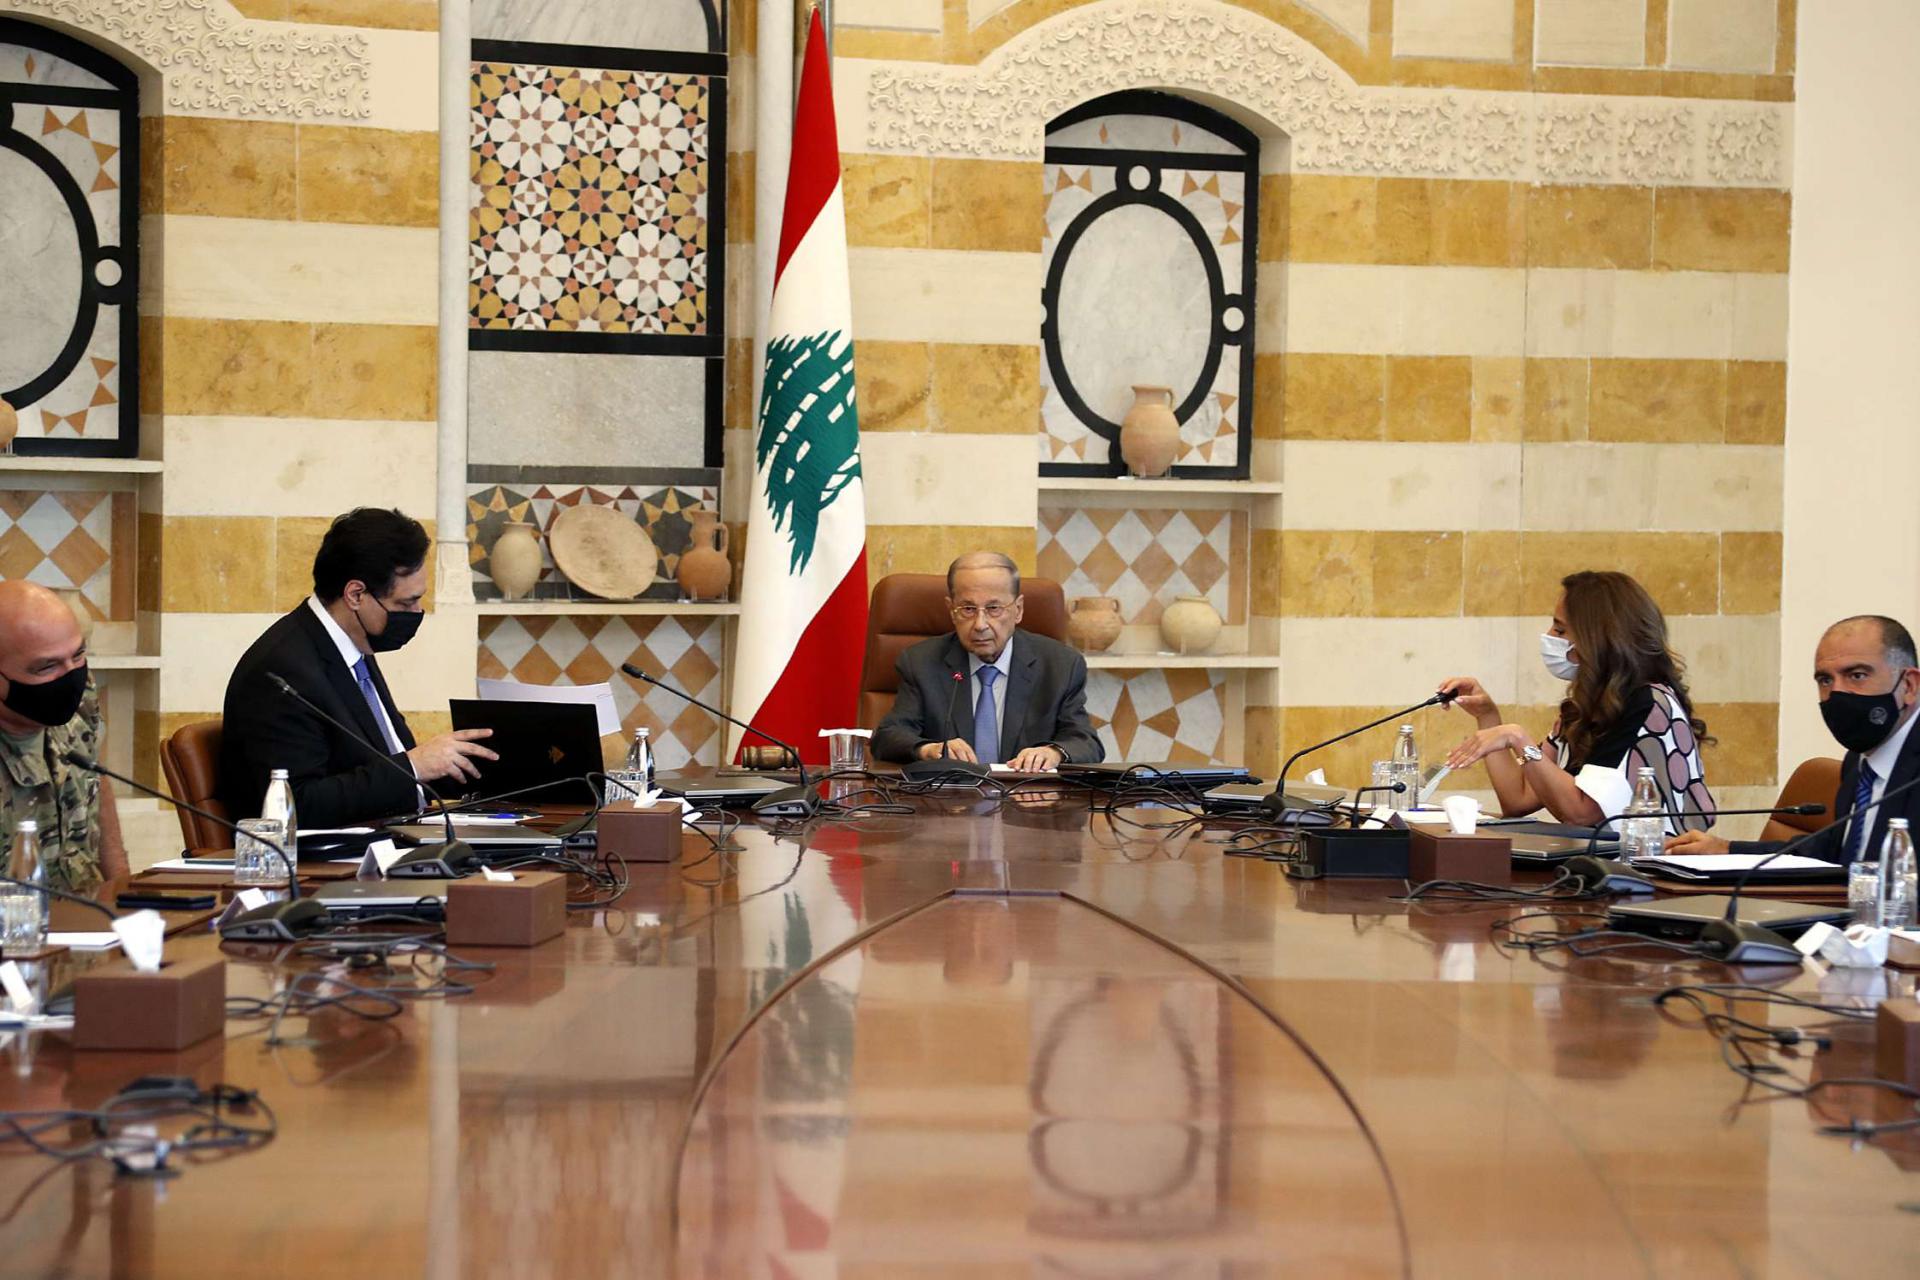 مشاورات تشكيل الحكومة اللبنانية وصلت إلى طريق مسدود بسبب اشتراطات حزب الله وأمل